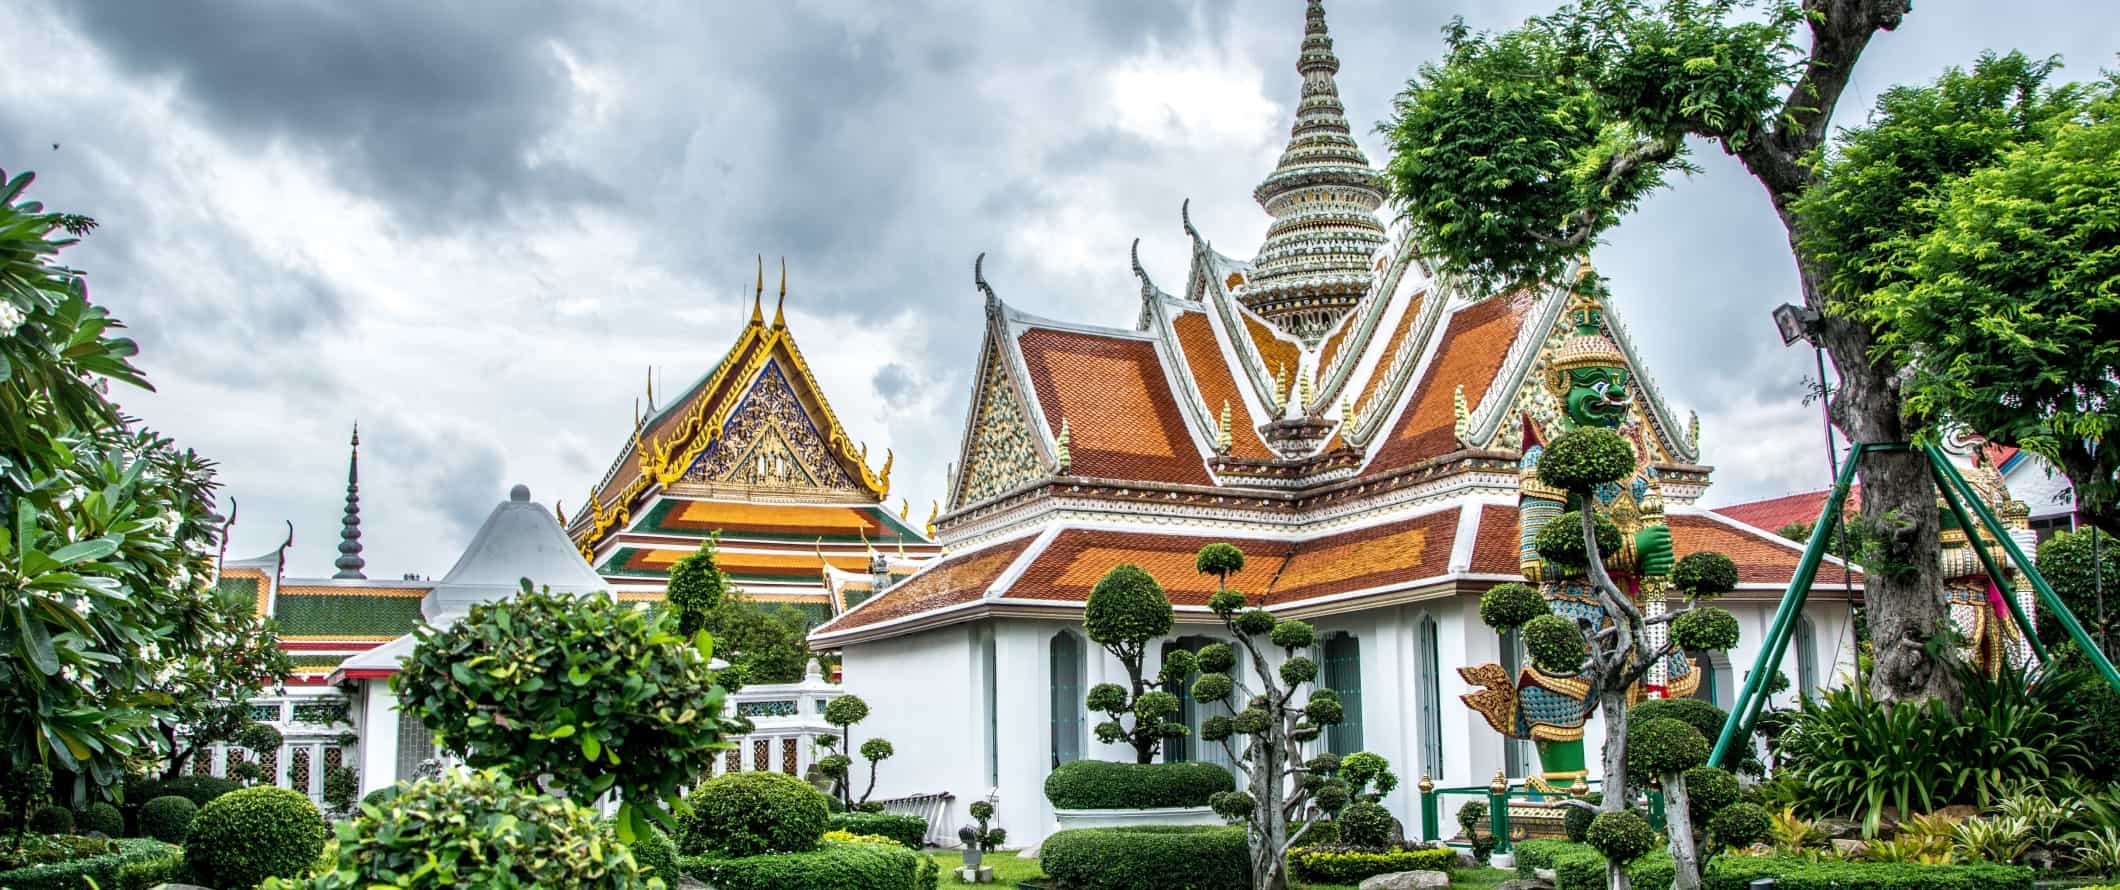 Edifícios dourados do complexo do templo de Wat Arun, cercado por topiaria be m-enlutada em Bangcoc, Tailândia